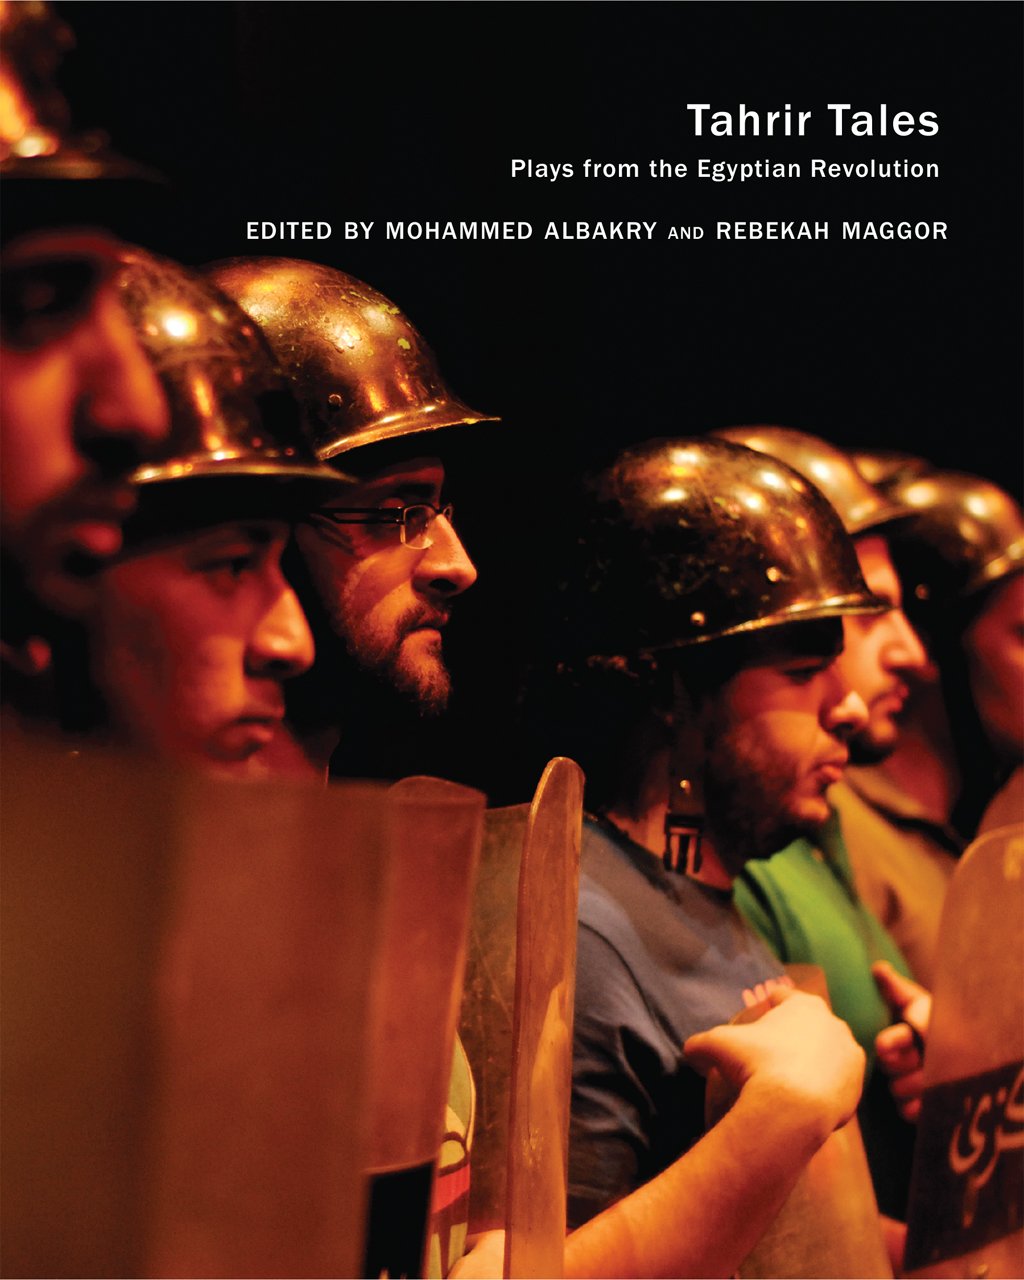 غلاف كتاب "حكايات التحرير: مسرحيات من الثورة المصرية" (published by Seagull Books)